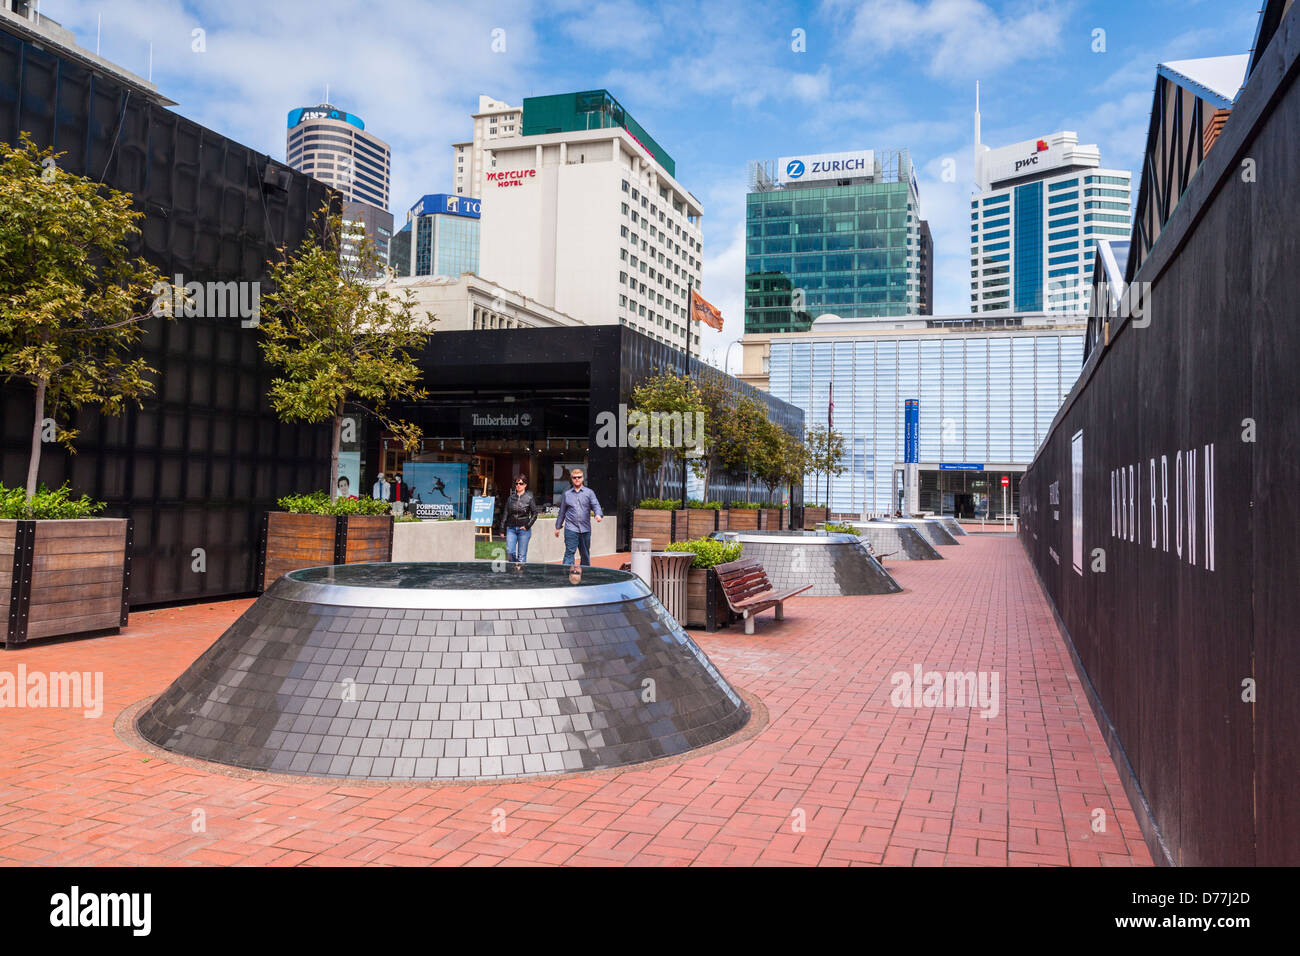 Straßenszene, Innenstadt, Auckland CBD. Die vorstehende Bereiche untersuchen Britomart Station, die im Hintergrund zu sehen ist. Stockfoto